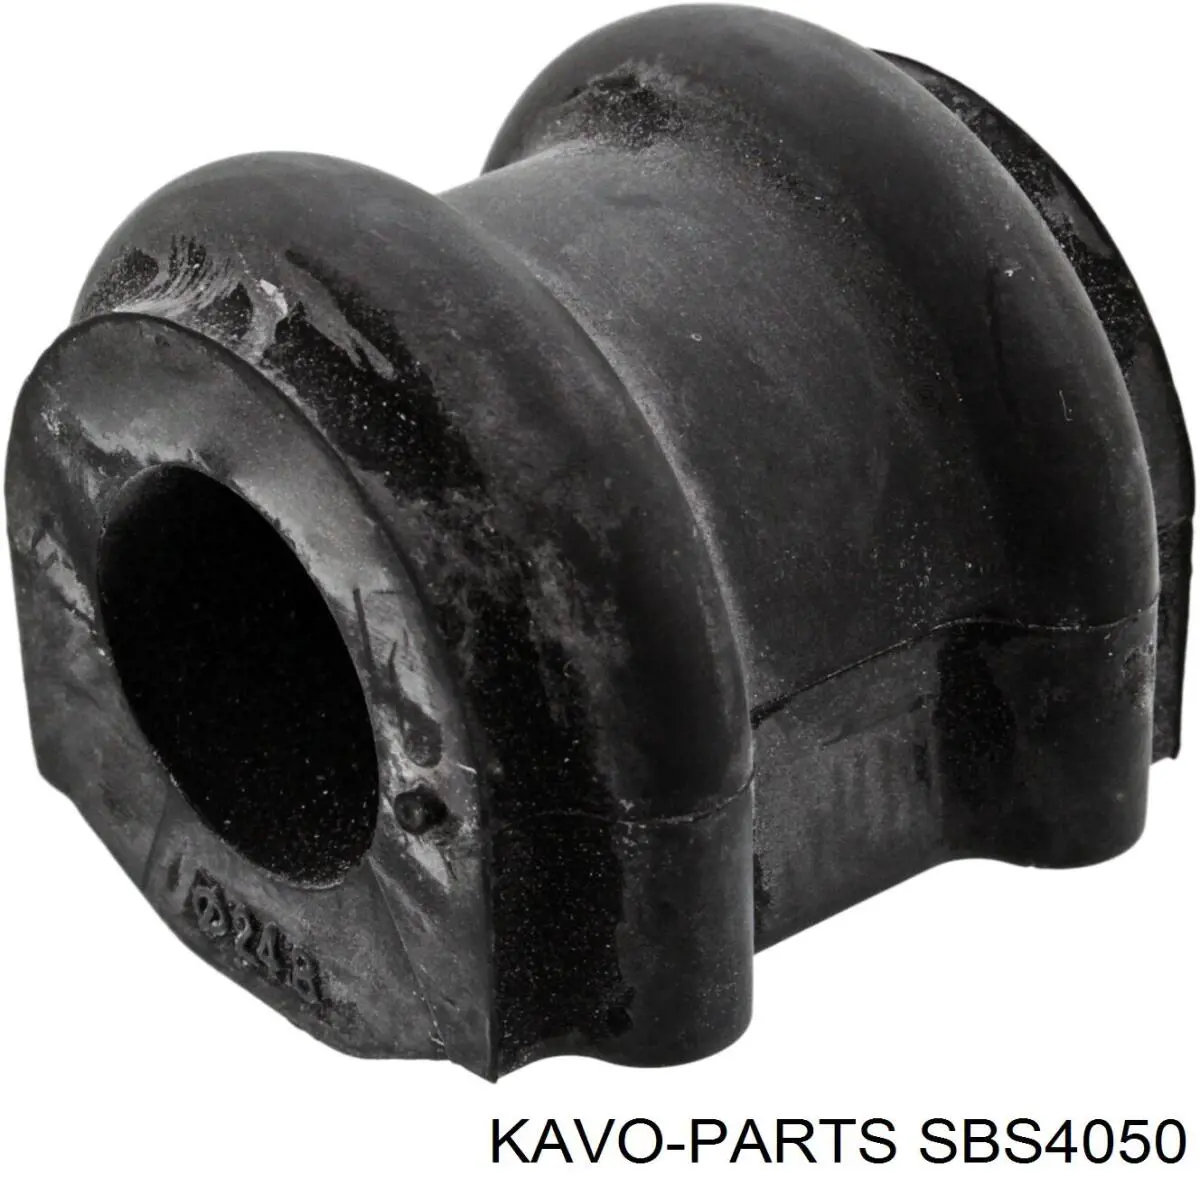 SBS4050 Kavo Parts casquillo de barra estabilizadora delantera